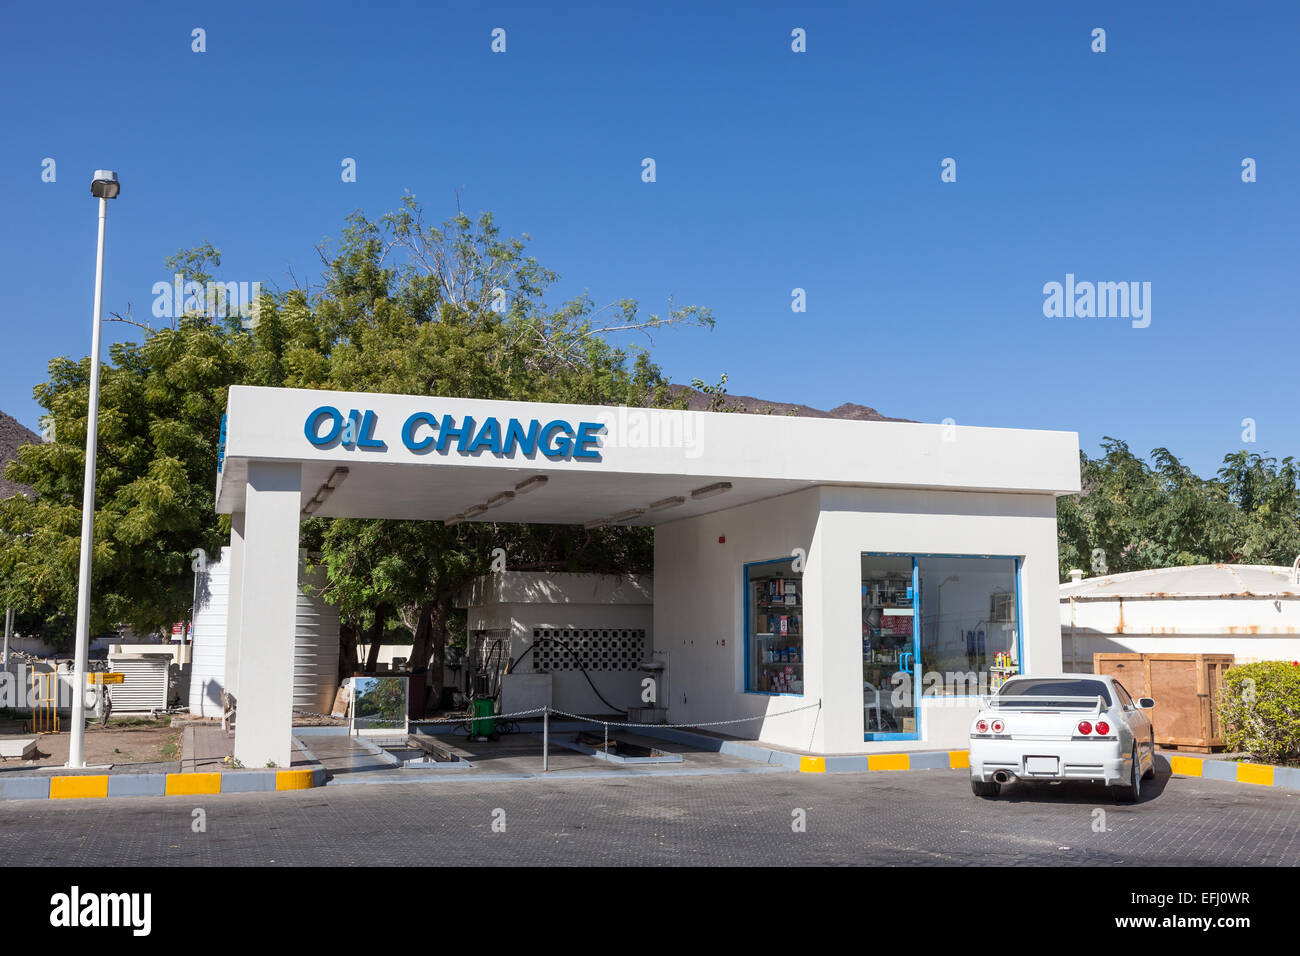 Servizio Cambio olio in corrispondenza di una stazione di benzina negli Emirati Arabi Uniti Foto Stock